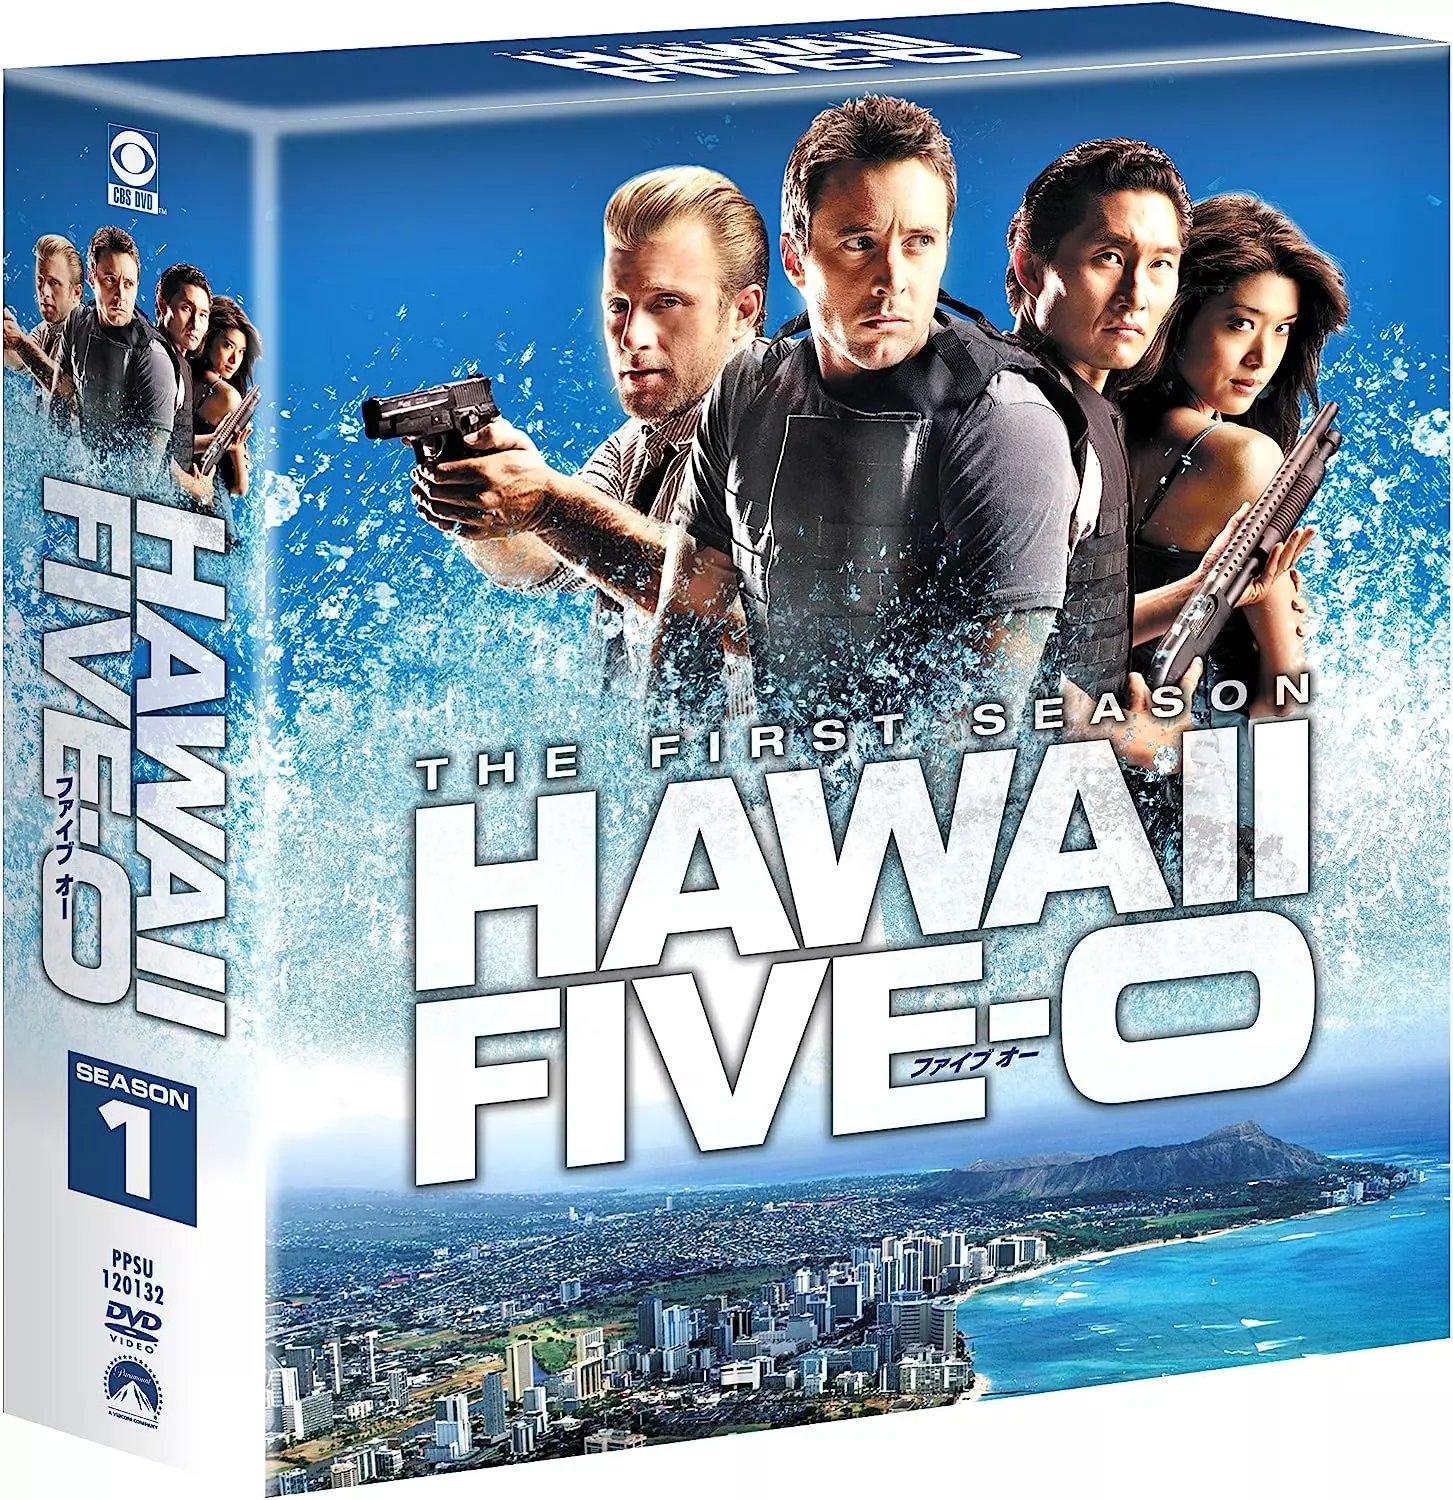 HAWAII FIVE-0 